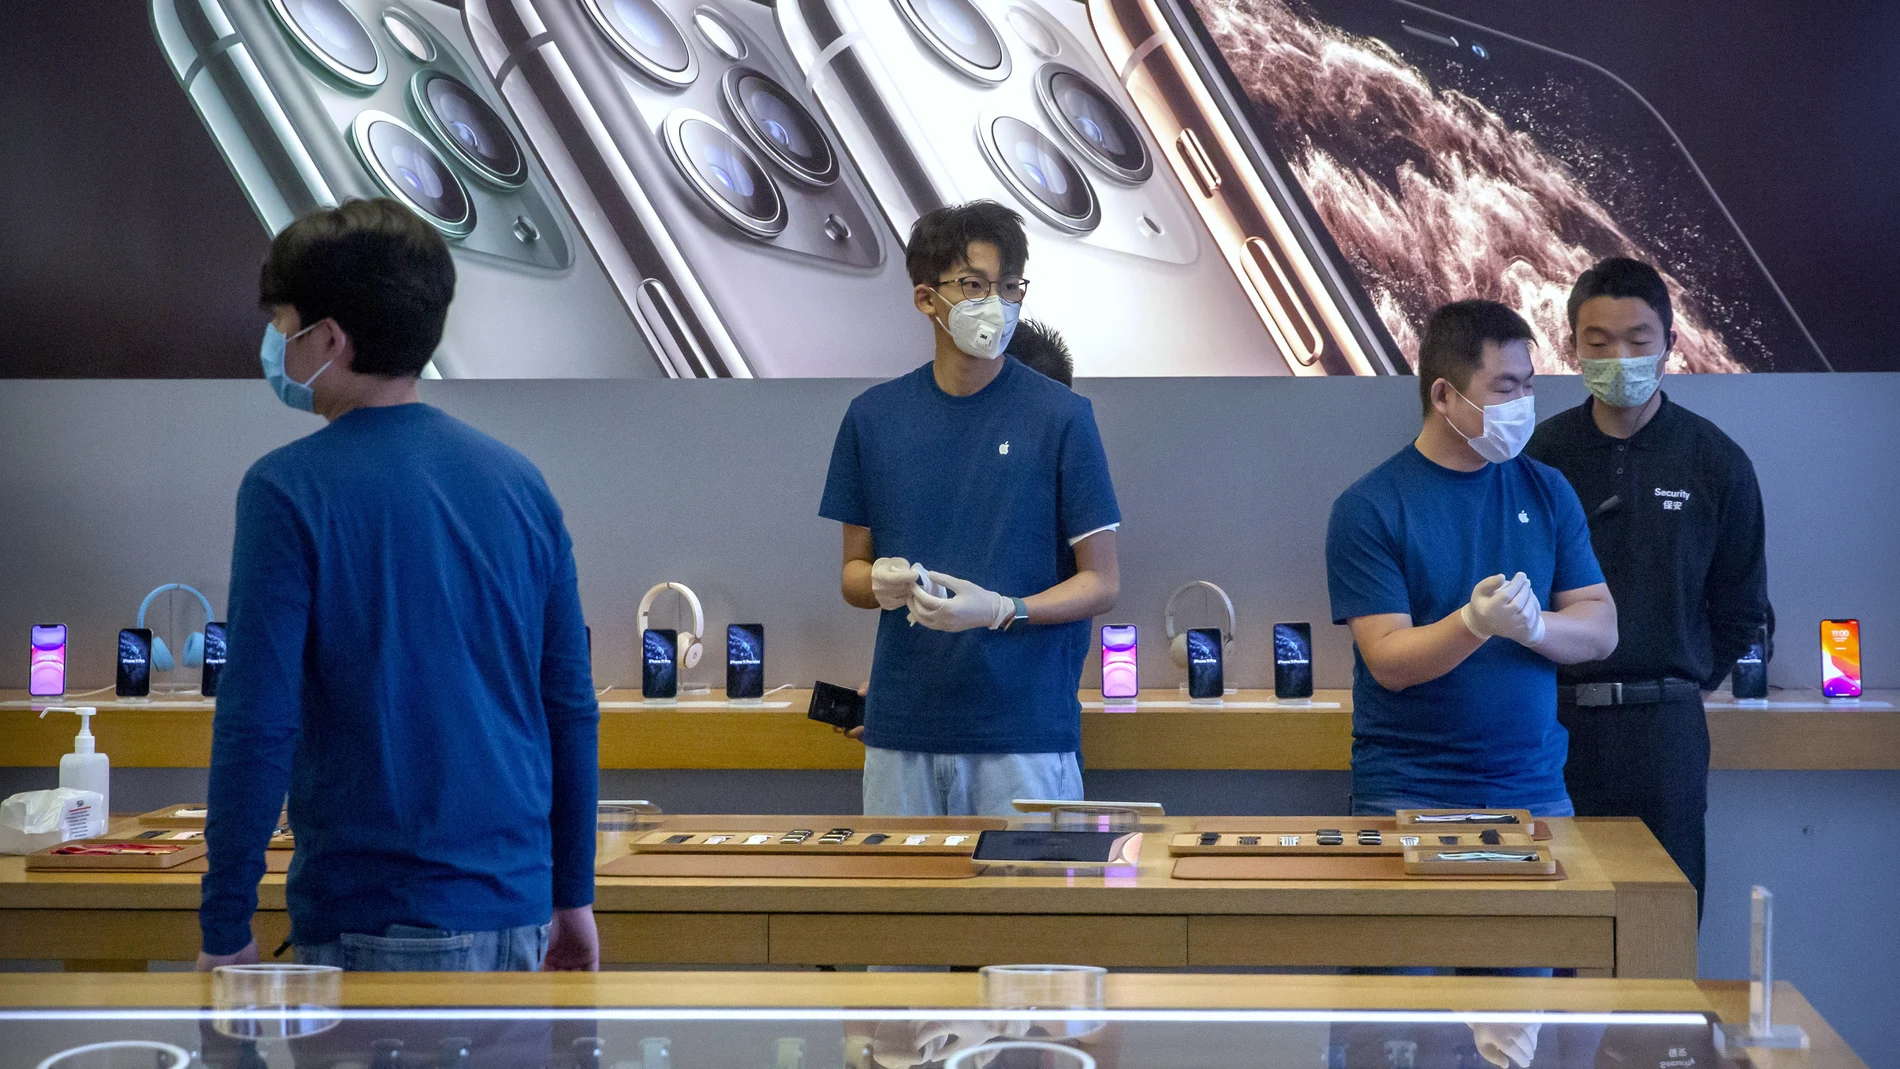 Empleados de iPhone en una tienda en China (AP Photo/Mark Schiefelbein)